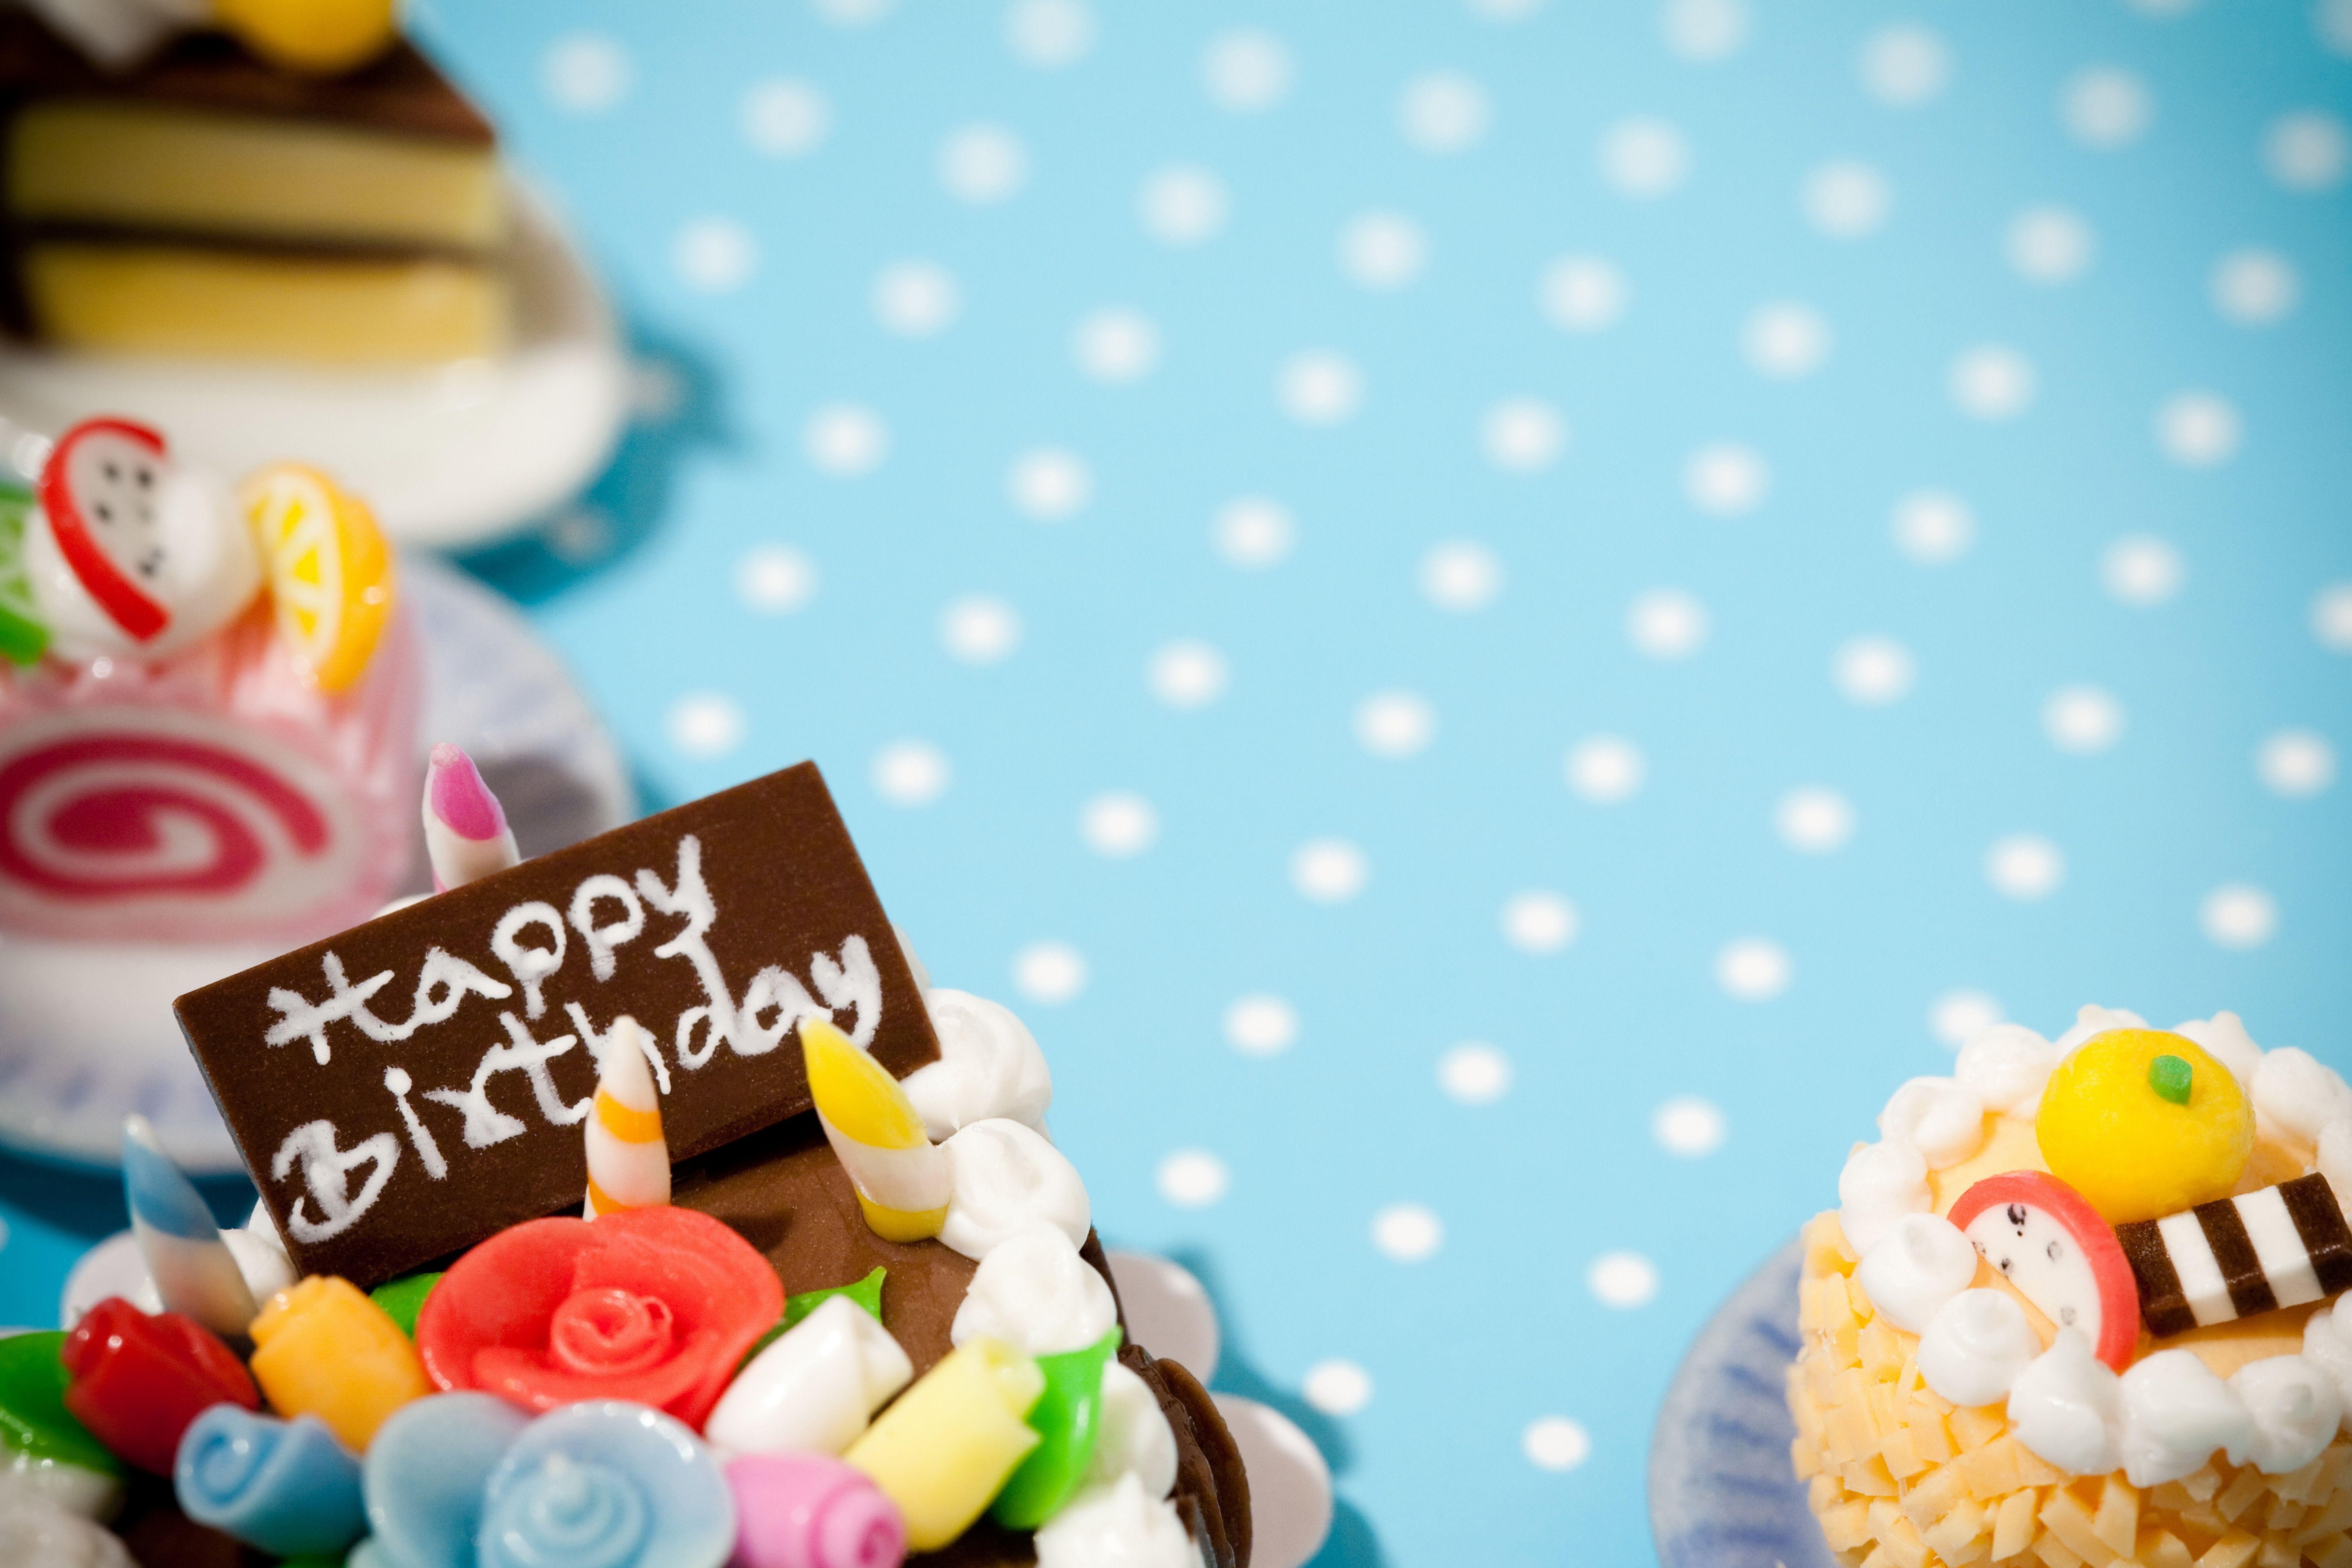 Hình nền bánh sinh nhật sẽ tạo nên một không gian sinh nhật đầy màu sắc và năng động. Với những hình nền bánh sinh nhật đẹp mắt và sáng tạo, bạn có thể tạo nên không gian sinh nhật mang phong cách riêng của mình. Hãy cùng khám phá những hình nền bánh sinh nhật để tạo ra một bầu không khí vui tươi và ấm áp.